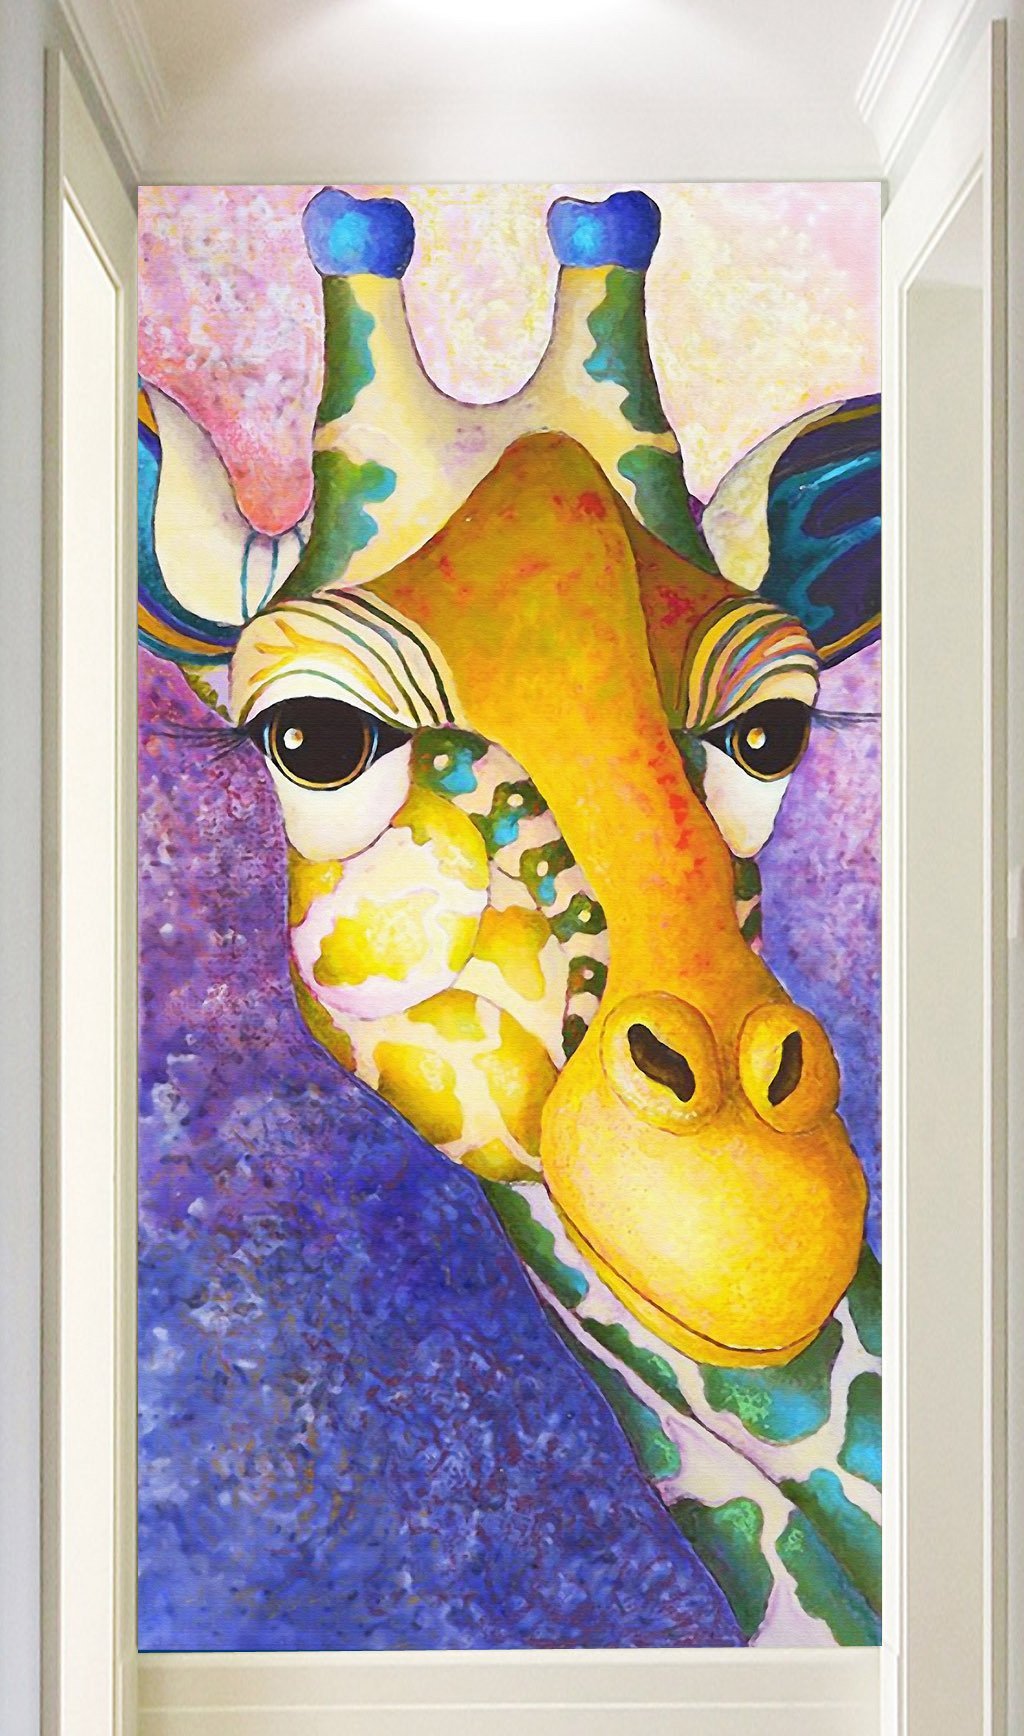 3D Cute Giraffe 509 Wall Murals Wallpaper AJ Wallpaper 2 